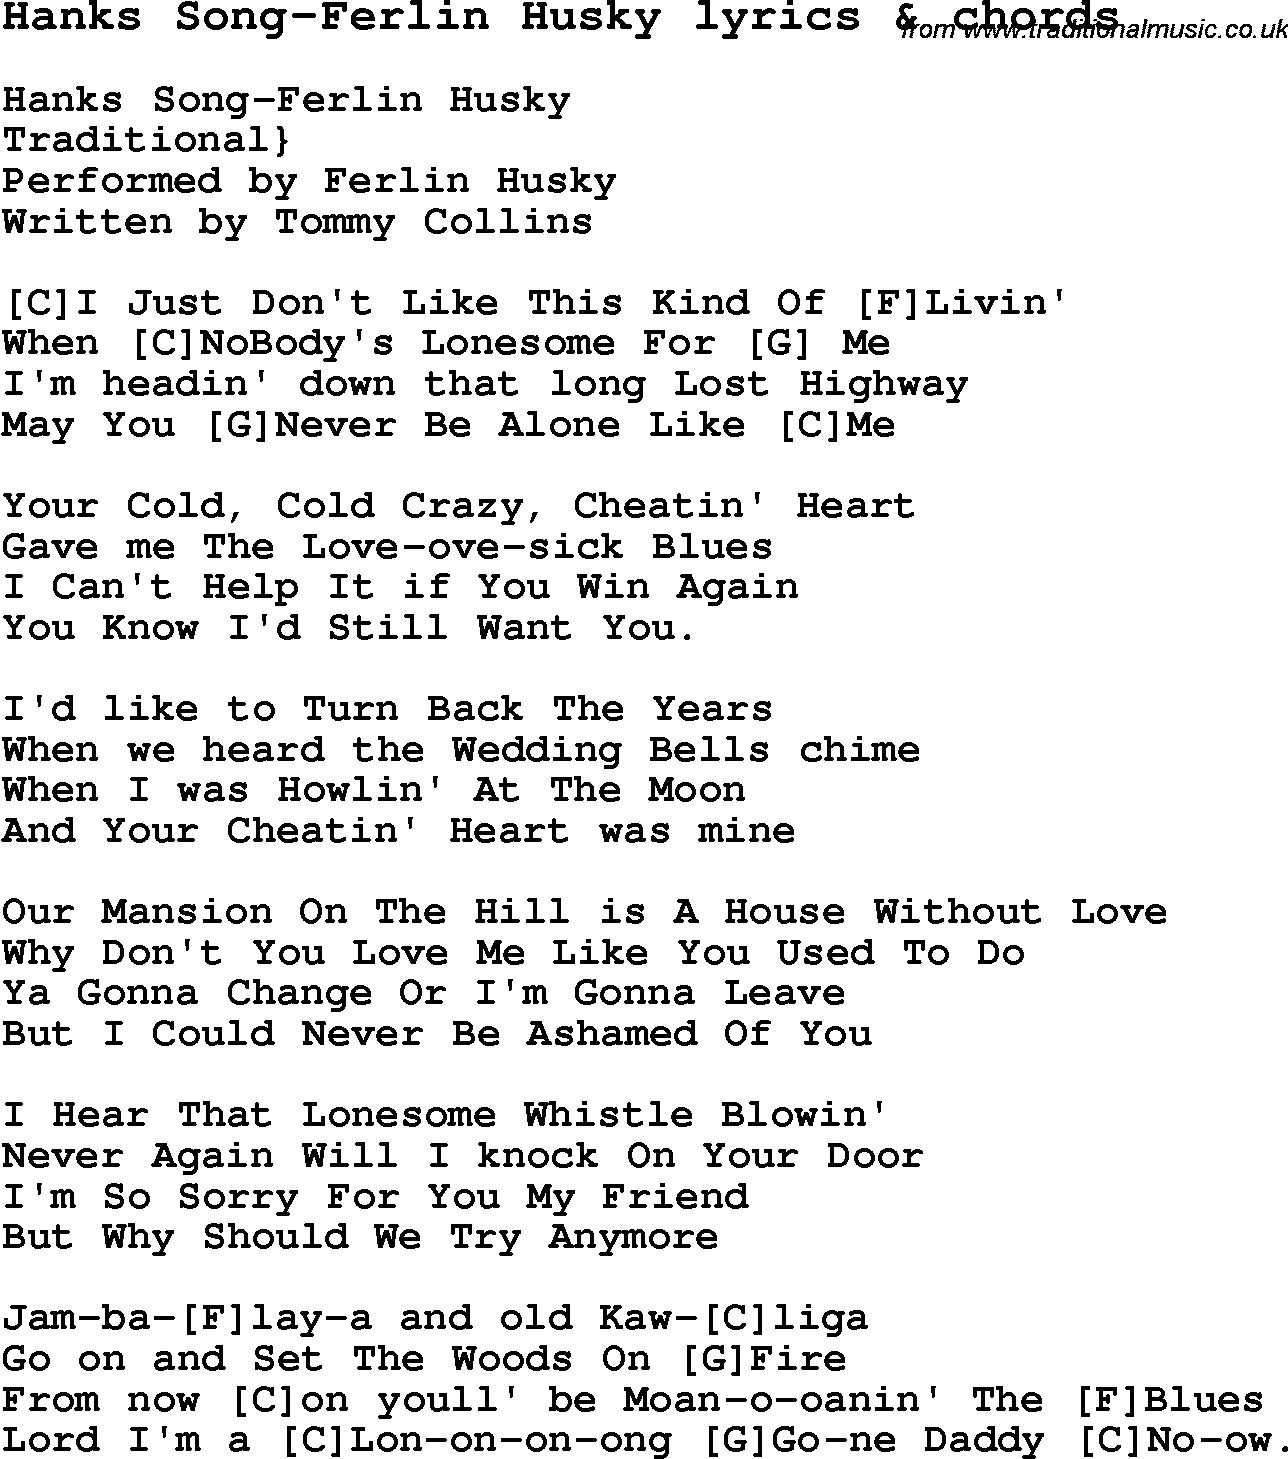 Love Song Lyrics for: Hanks Song-Ferlin Husky with chords for Ukulele, Guitar Banjo etc.